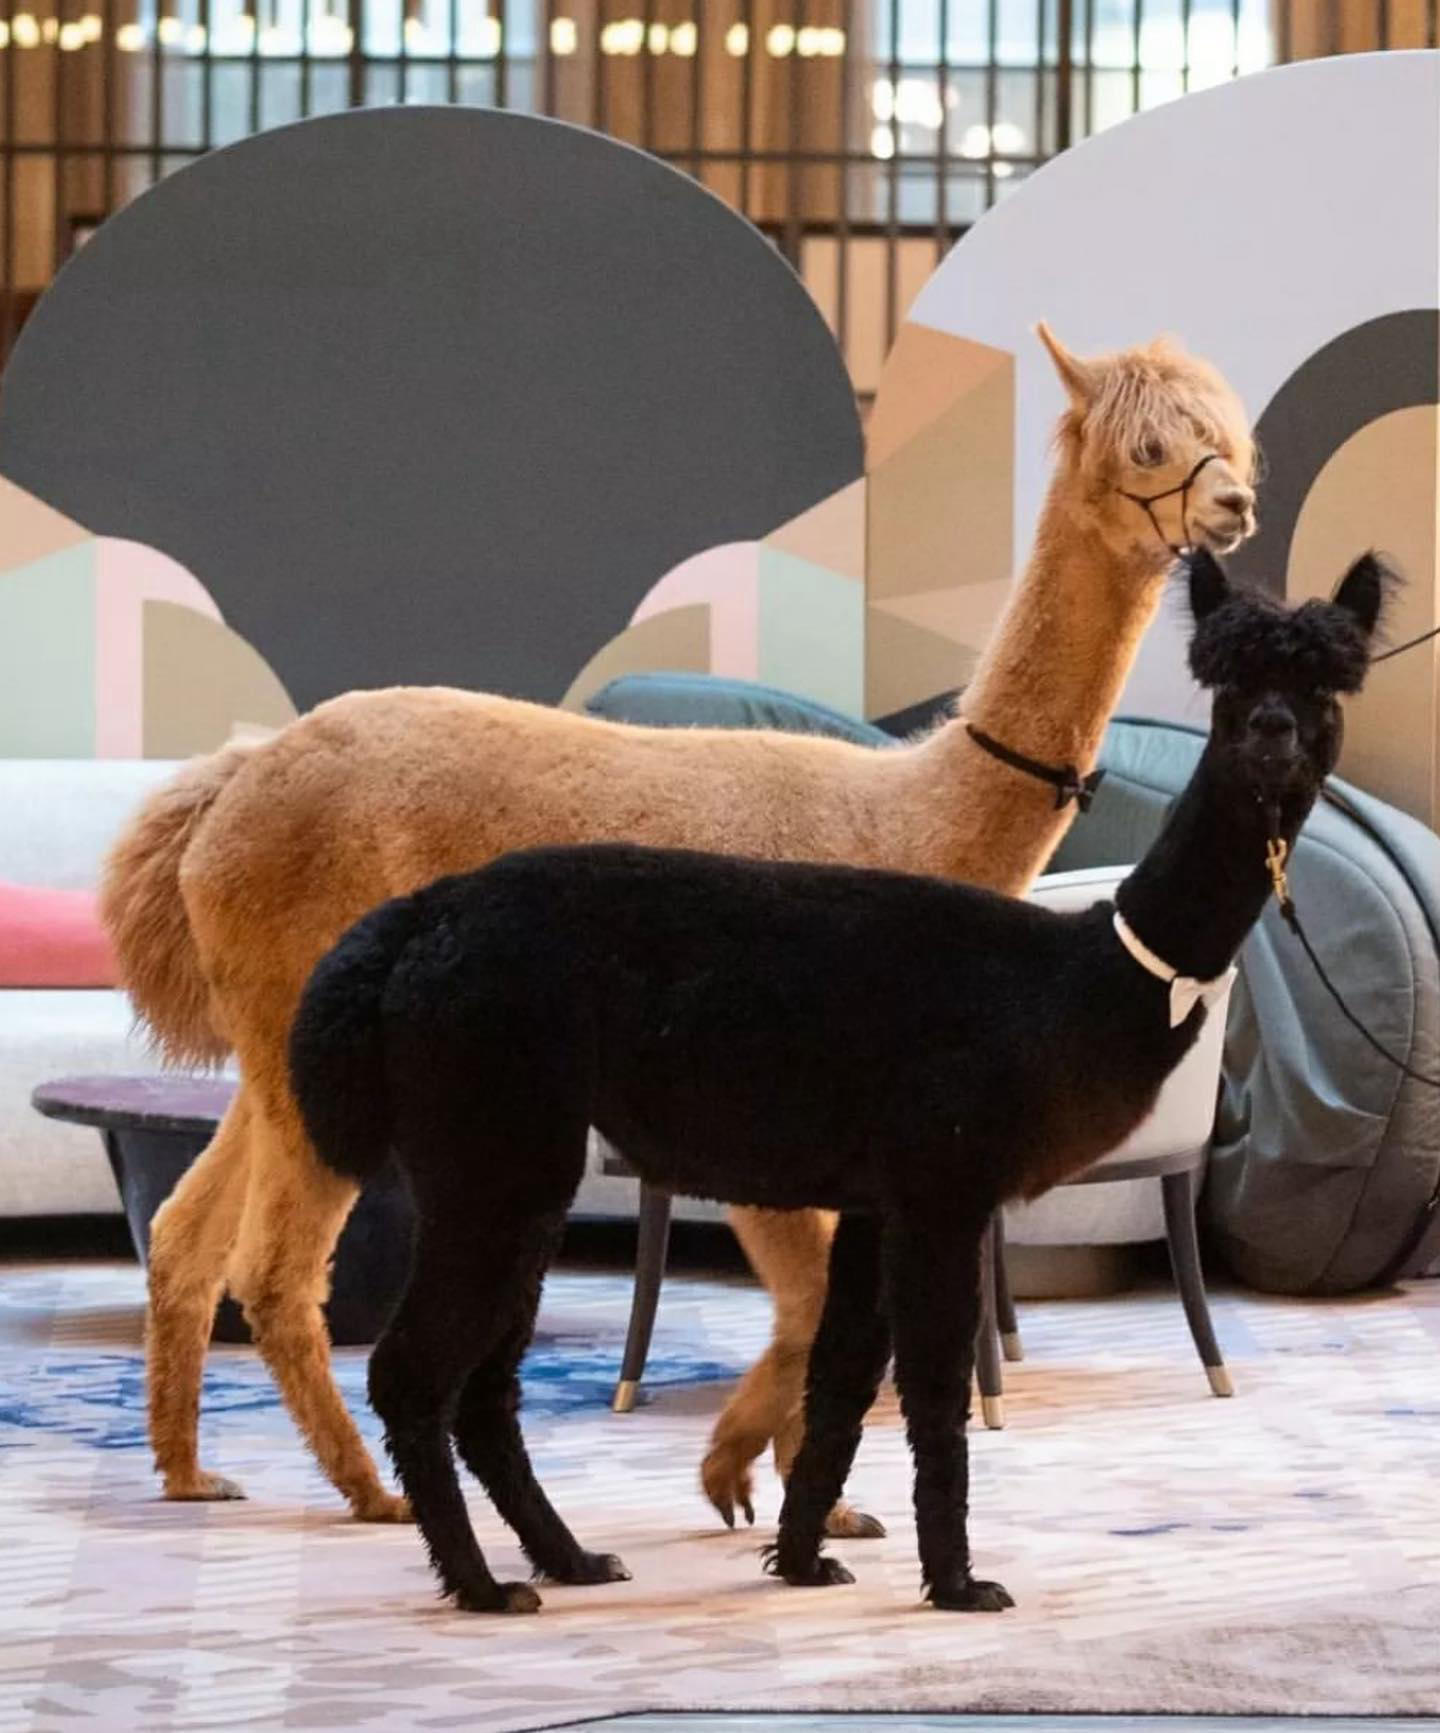 Did someone say llamas